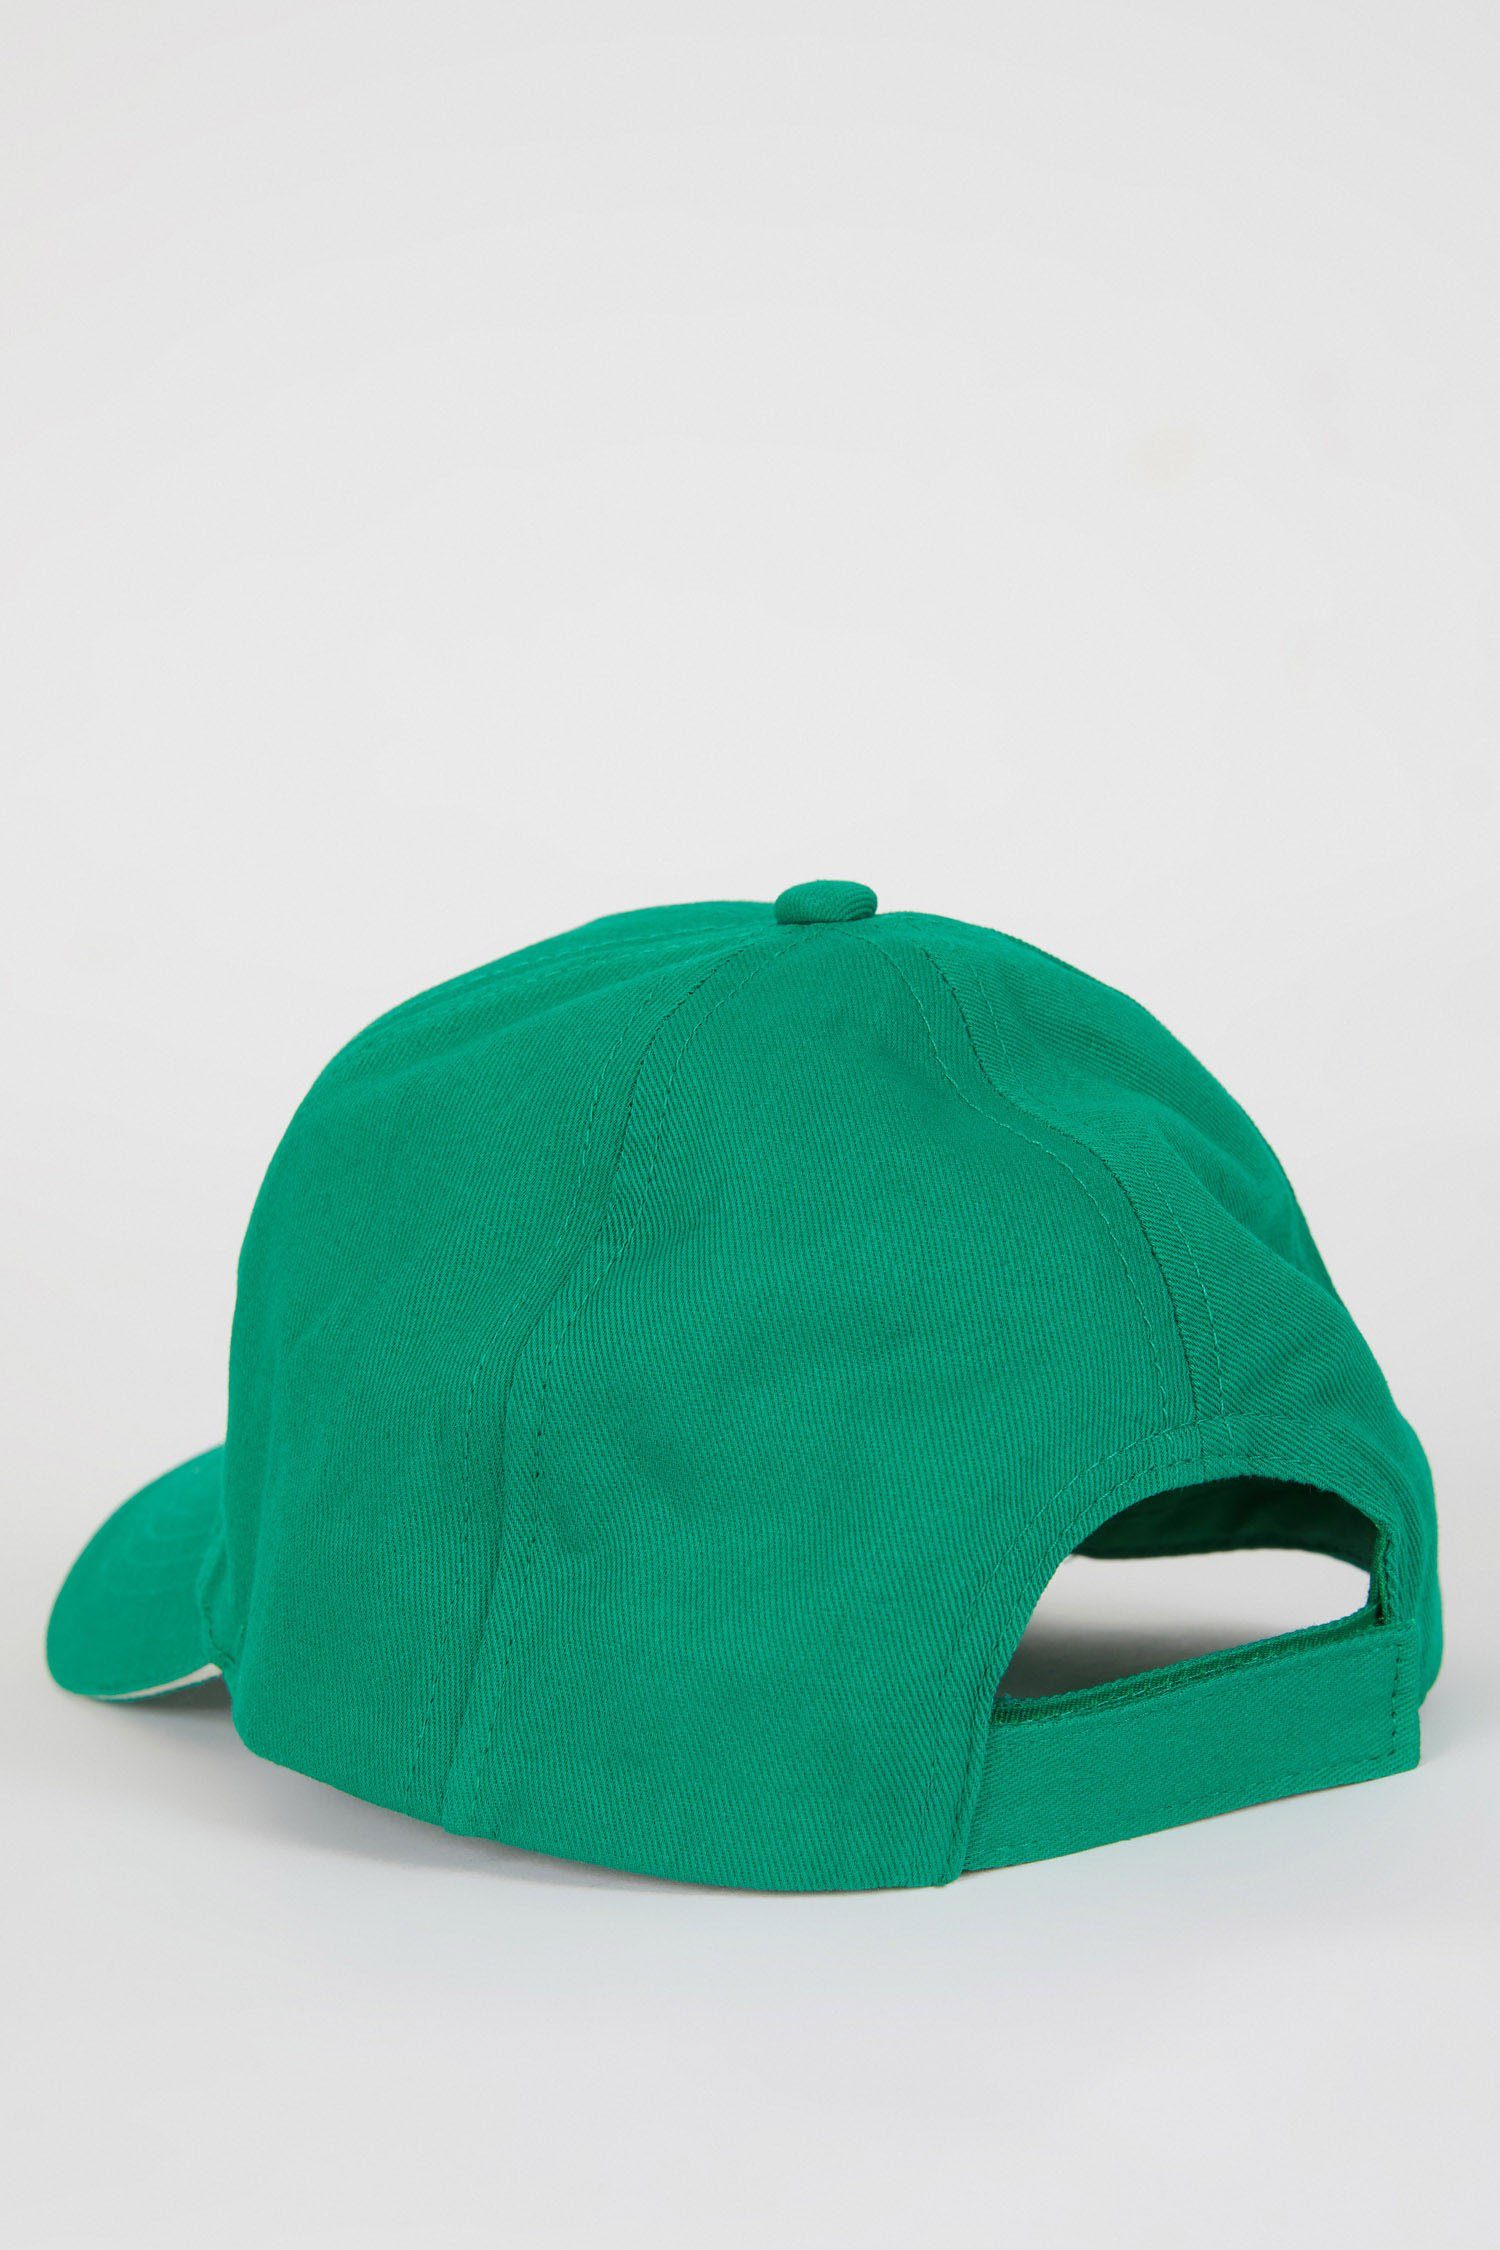 Jungen DeFacto Snapback Grün Cap Cap